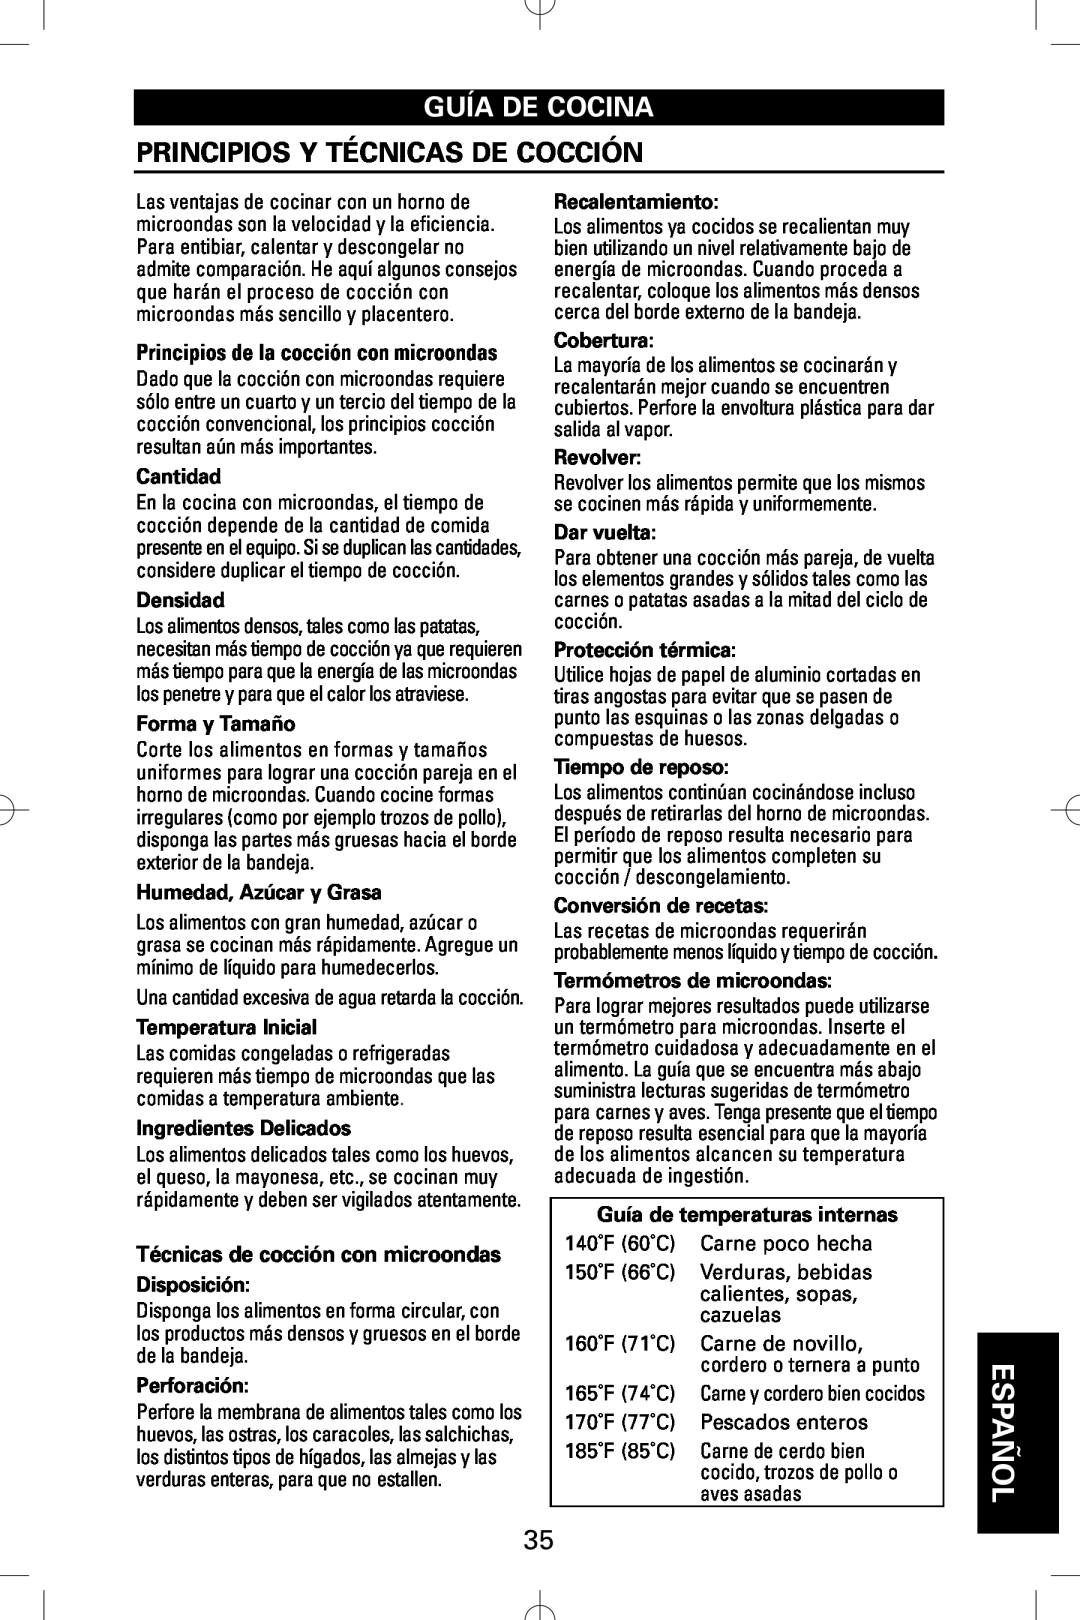 Sanyo EM-S5002W instruction manual Guía De Cocina, Principios Y Técnicas De Cocción, Español 